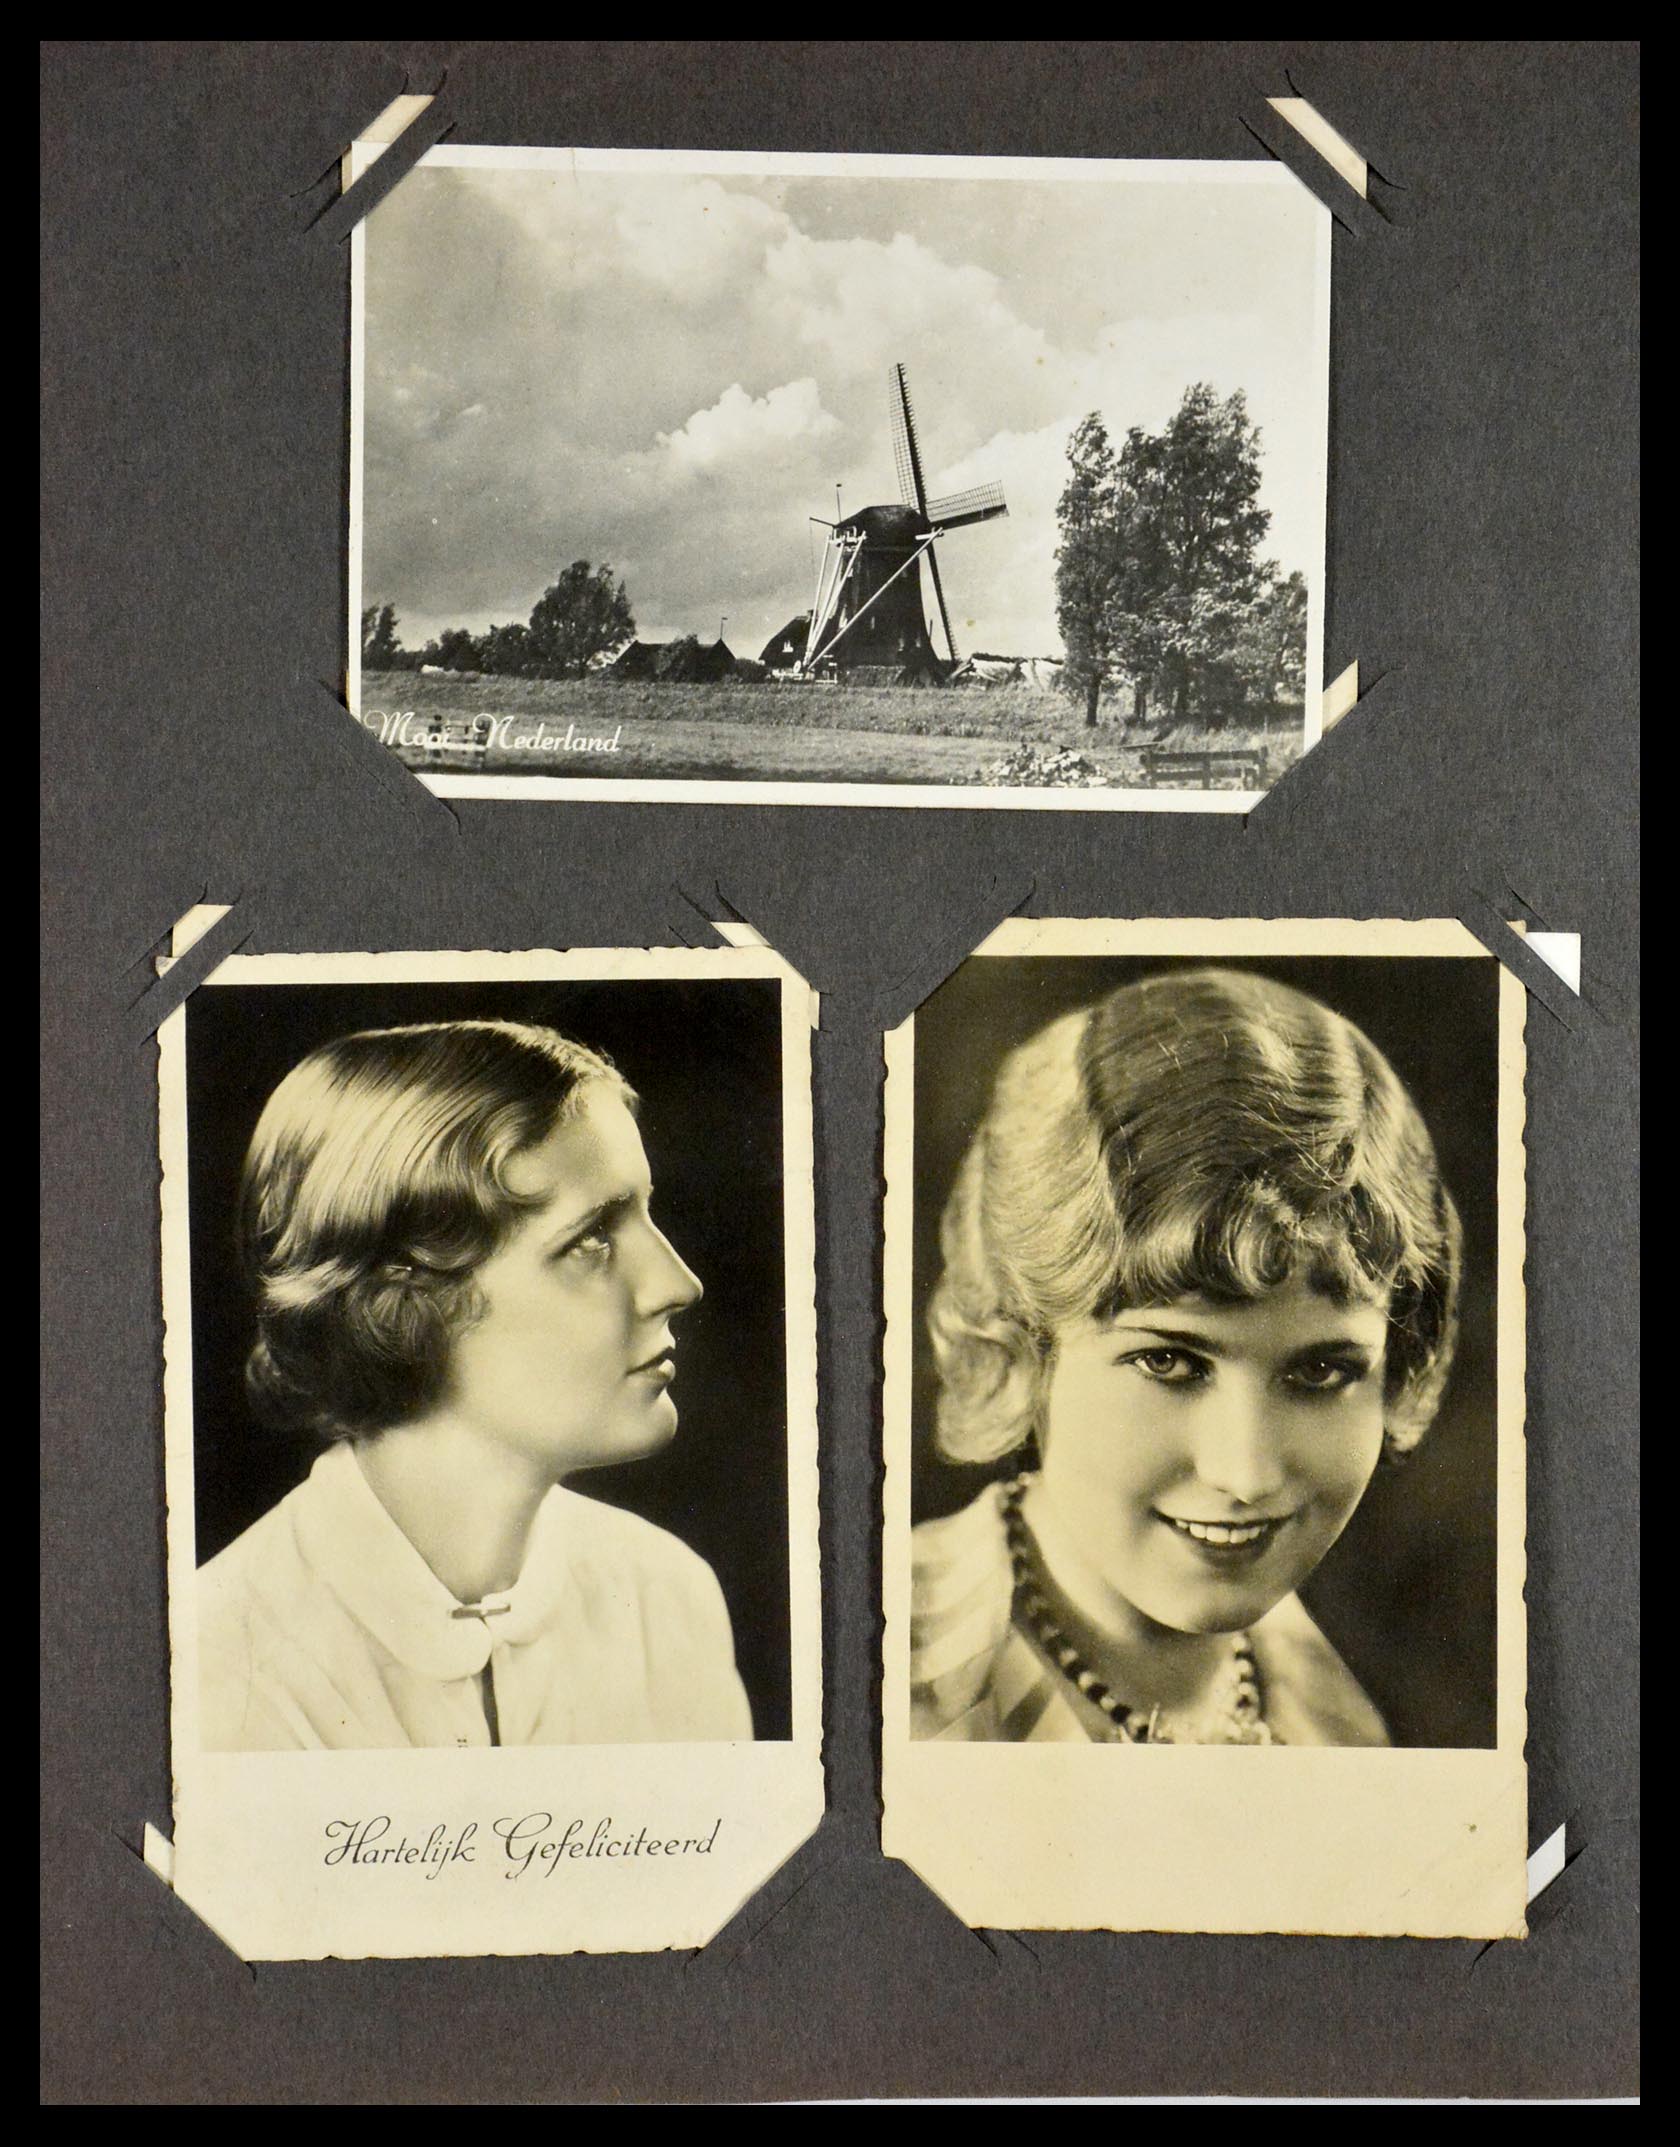 29518 043 - 29518 Nederland ansichtkaarten 1939-1940.